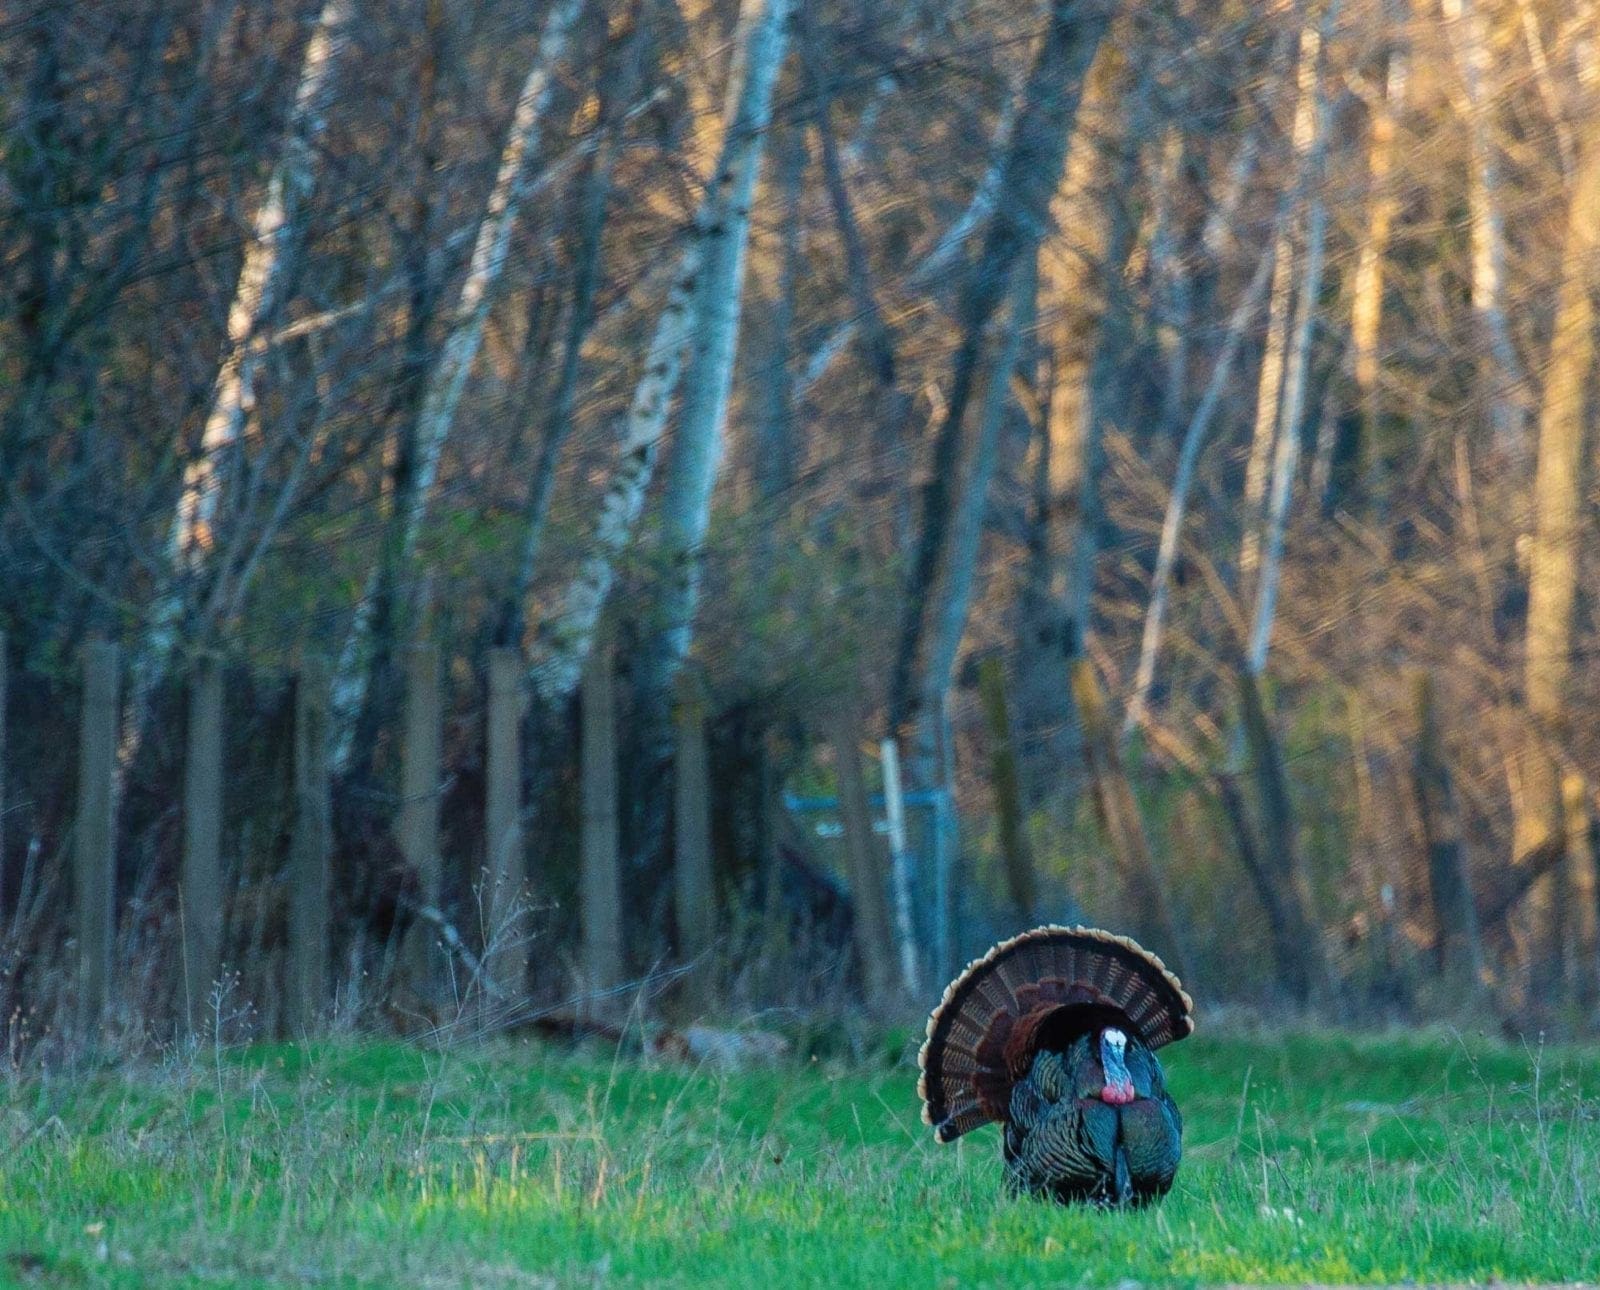 A turkey hangs up outside of shooting range.